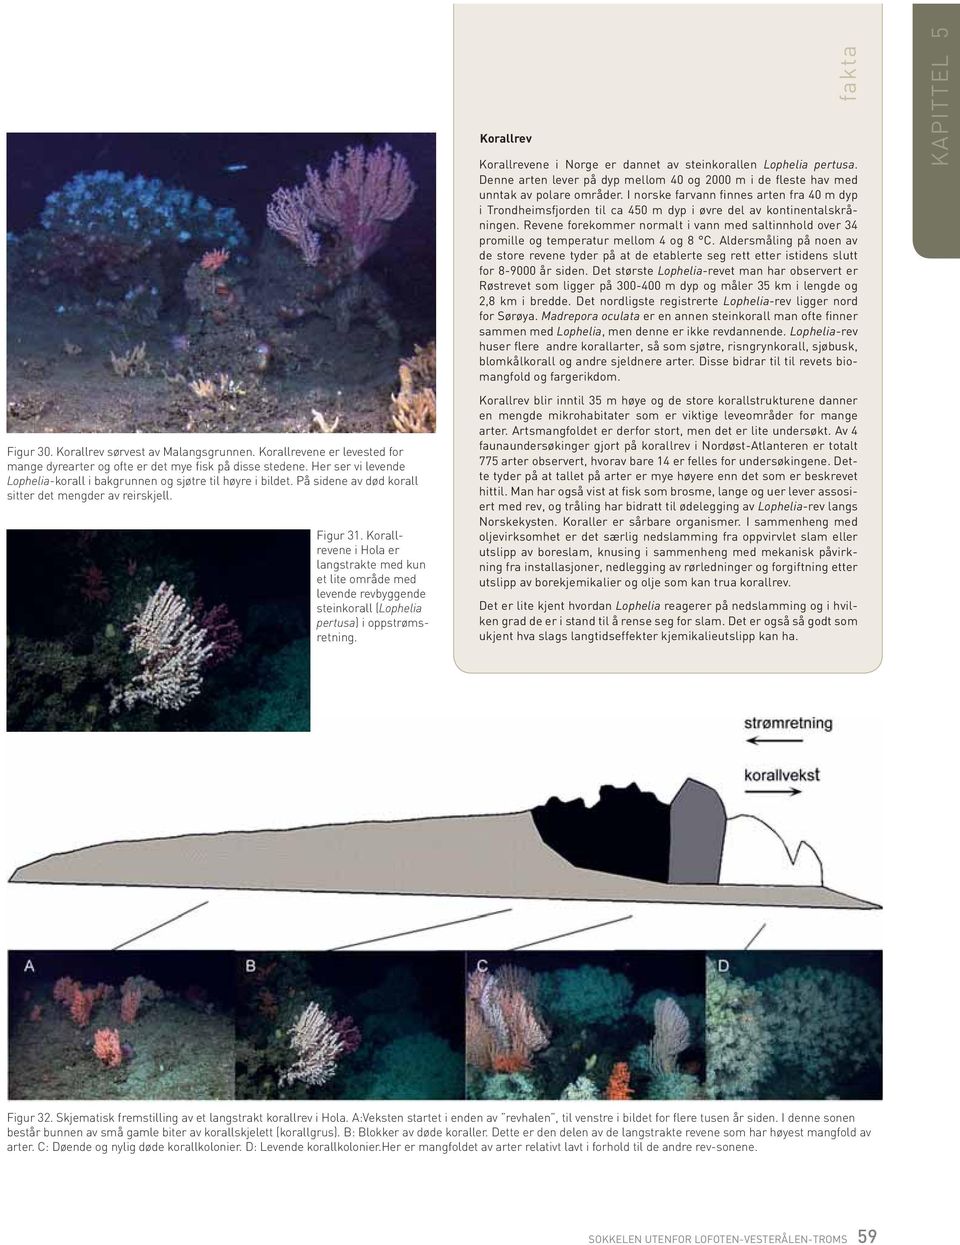 Korallrevene i Hola er langstrakte med kun et lite område med levende revbyggende stein korall (Lophelia pertusa) i oppstrømsretning.